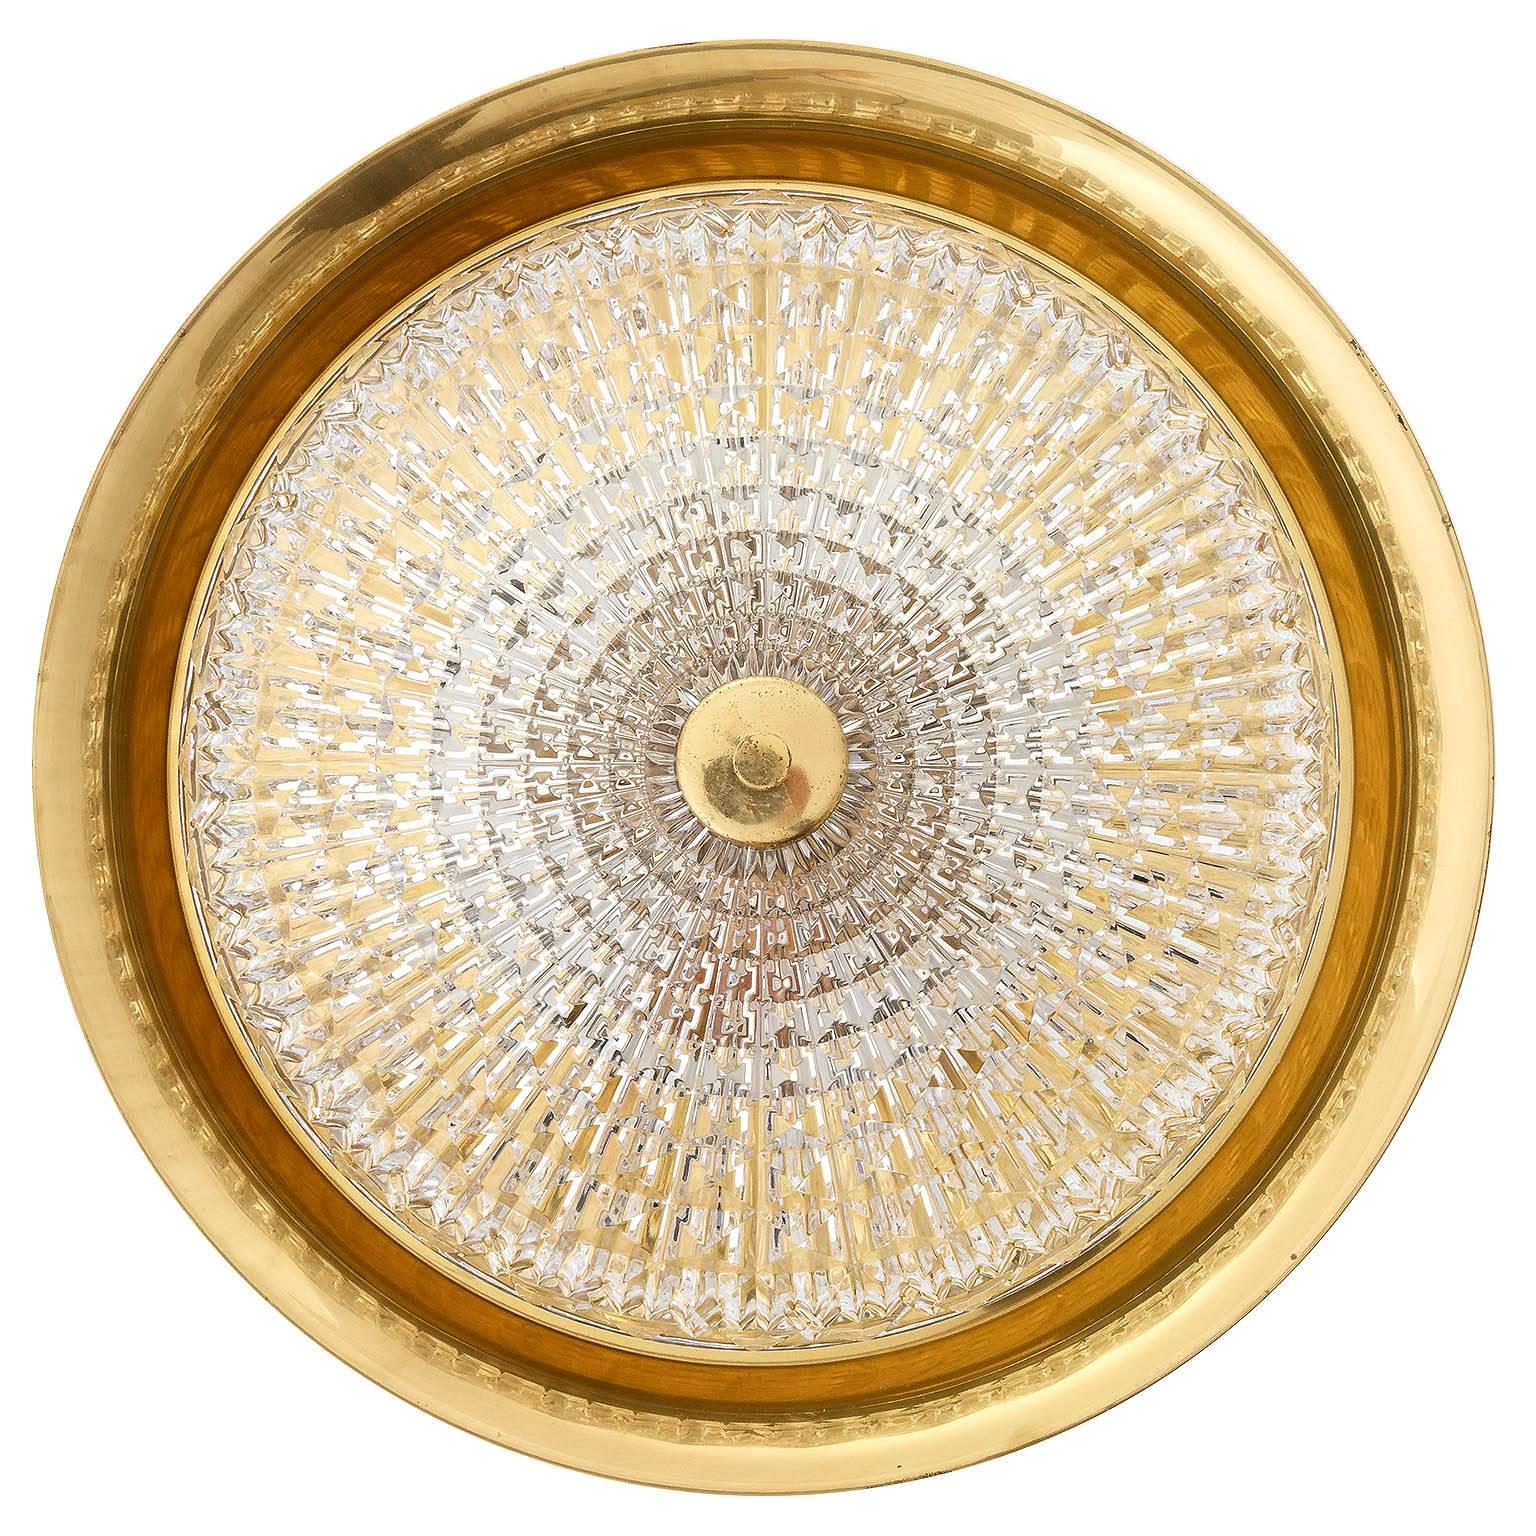 Magnifique luminaire en laiton et verre texturé de Carl Fagerlund pour Orrefors/Lyfa, Suède, fabriqué au milieu du siècle dernier, vers 1960. Elle peut être utilisée comme lampe murale ou de plafond.
La lampe dispose de cinq douilles pour des